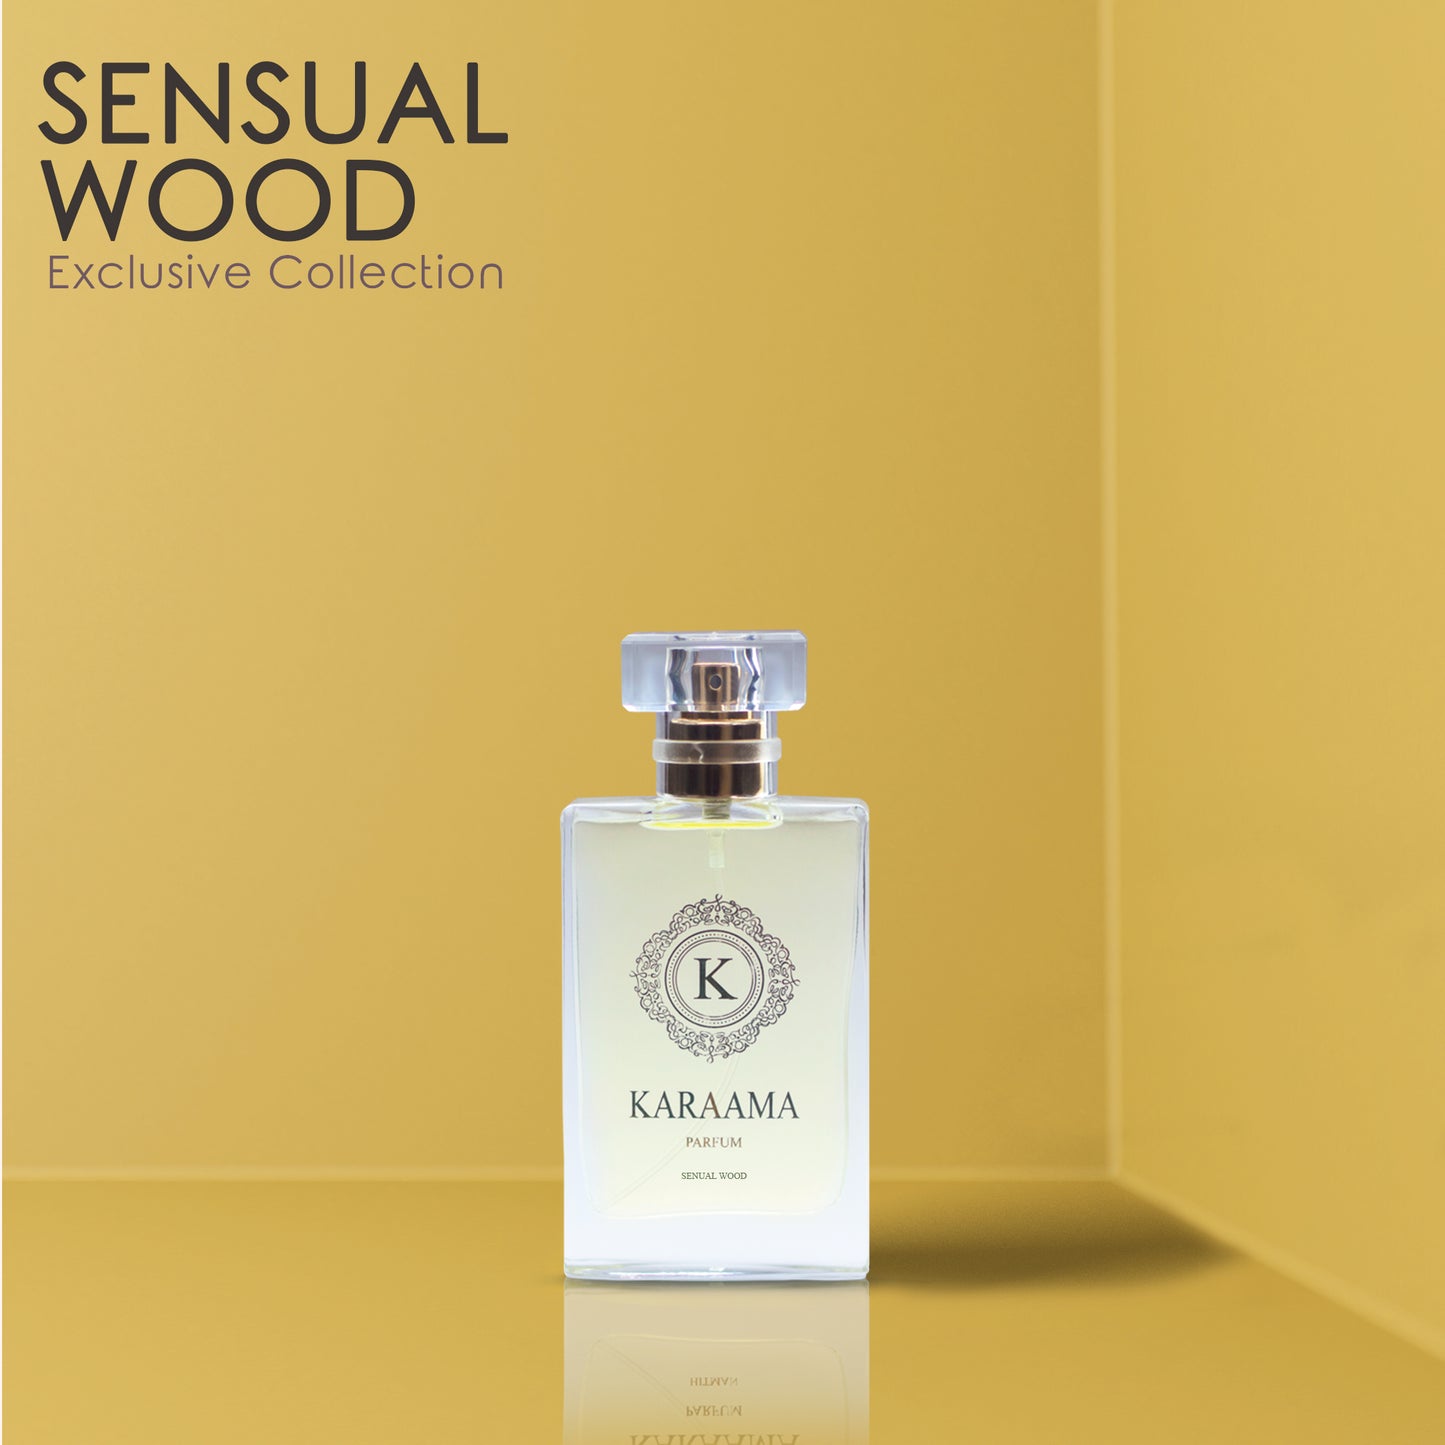 Sensual Wood - Karaama